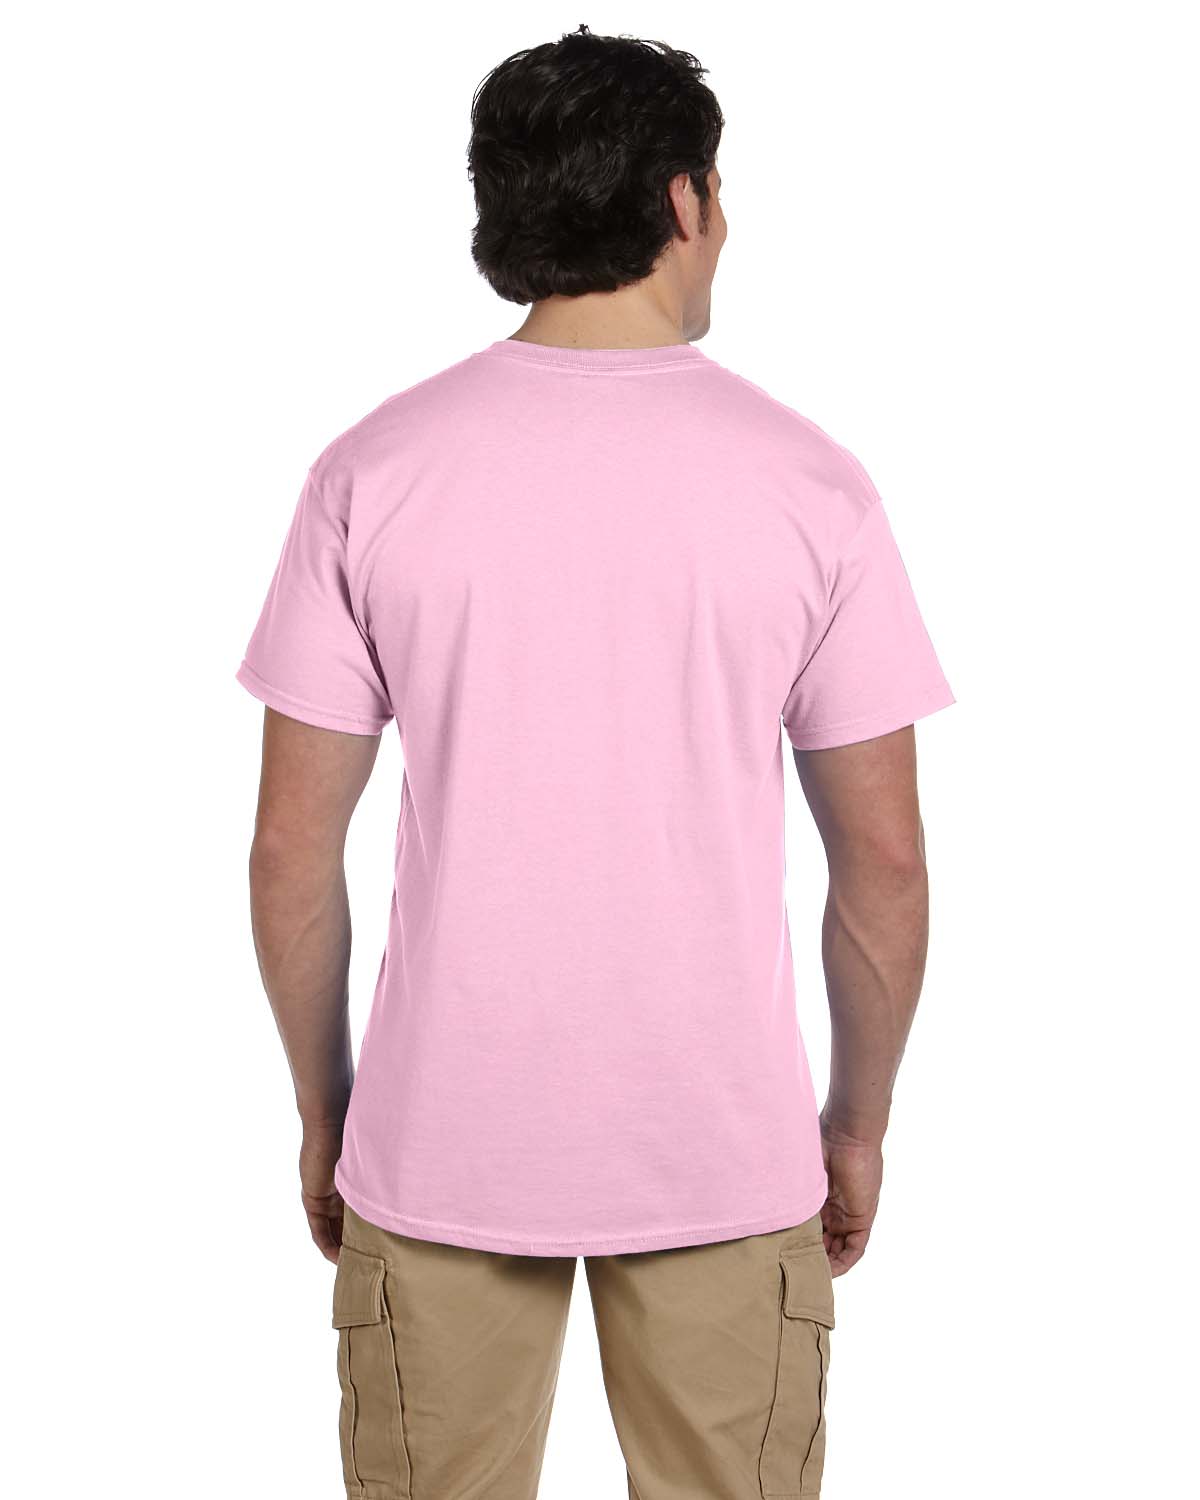 Mens 5.2 oz., 50/50 ComfortBlend EcoSmart T-Shirt 5170 (2 PACK) - image 3 of 3